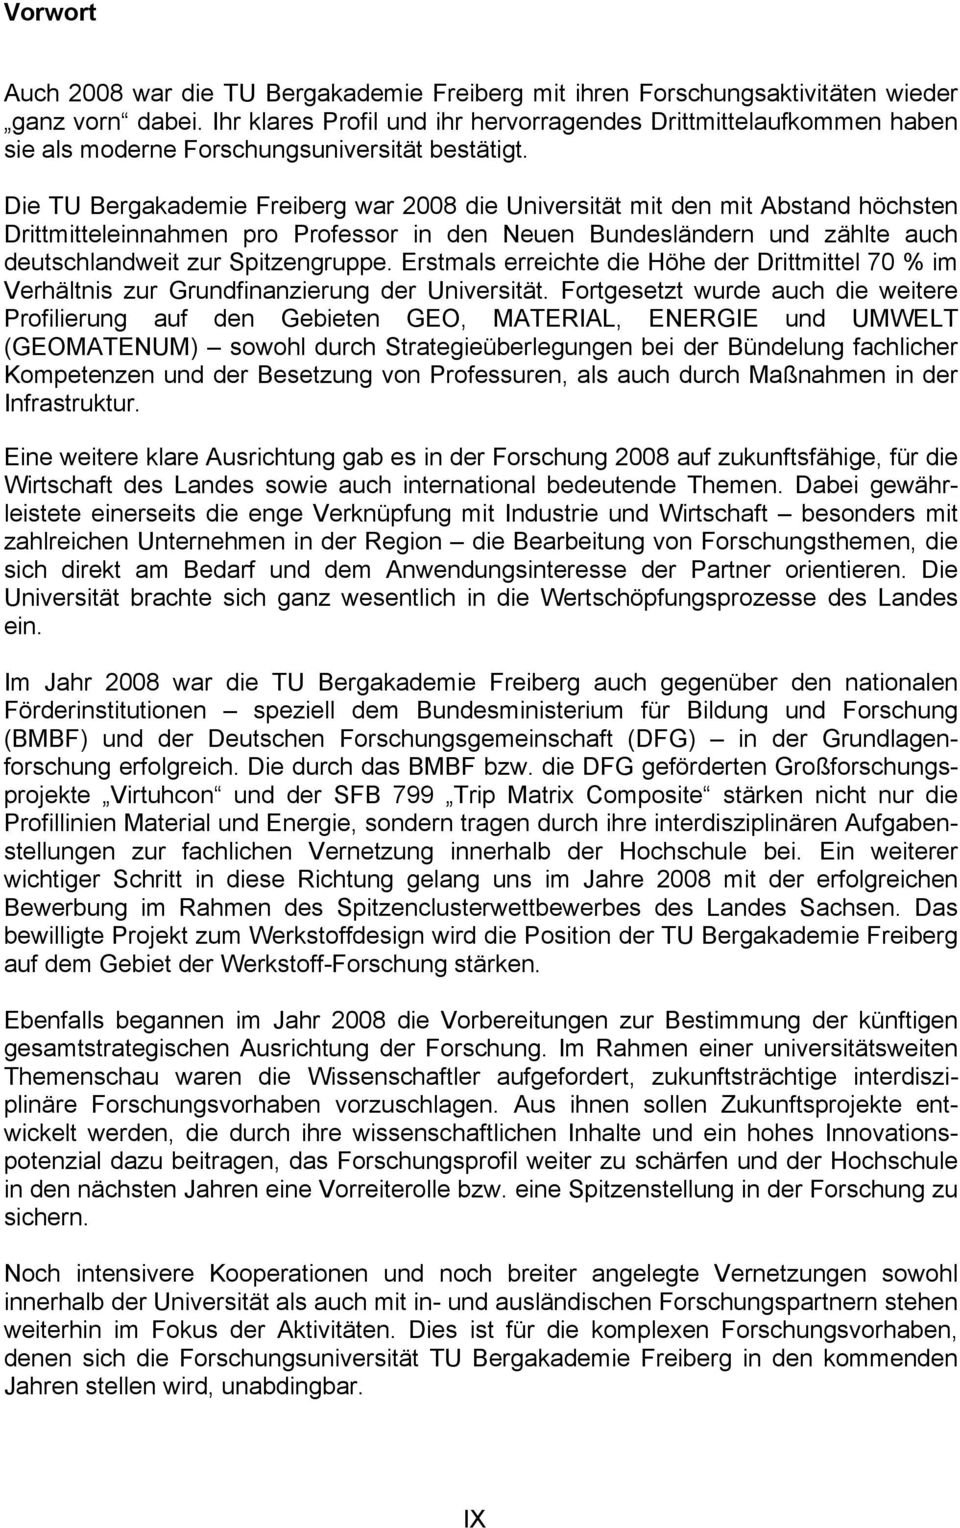 Die TU Bergakademie Freiberg war 2008 die Universität mit den mit Abstand höchsten Drittmitteleinnahmen pro Professor in den Neuen Bundesländern und zählte auch deutschlandweit zur Spitzengruppe.